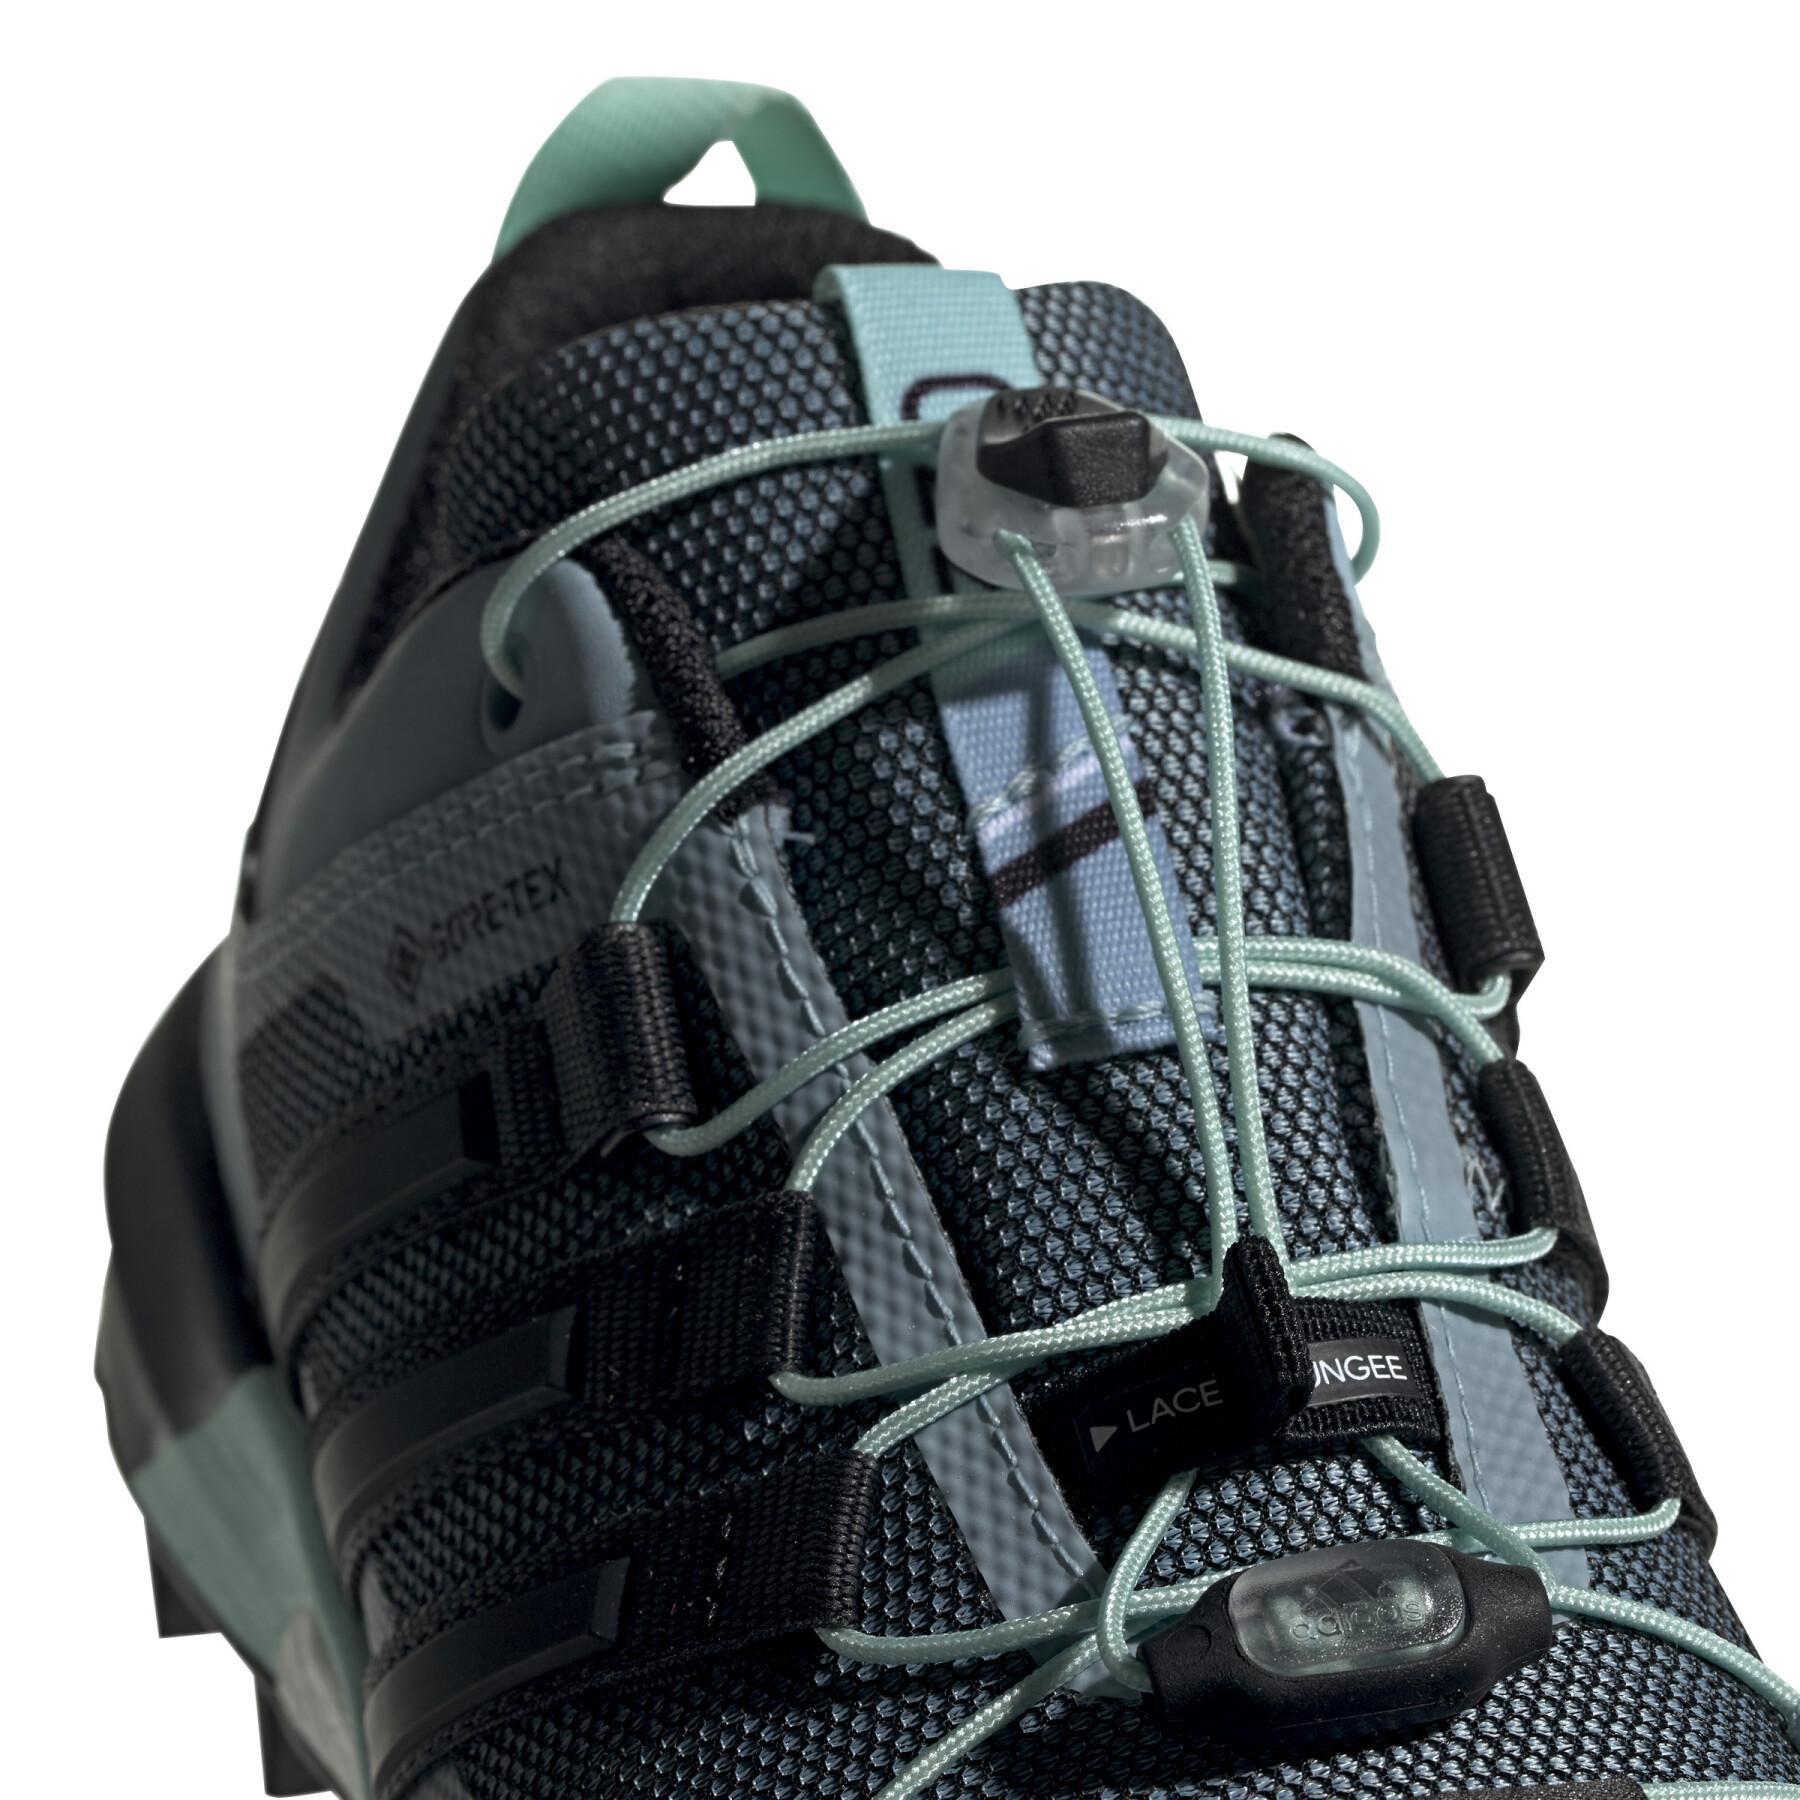 Schuhe von trail Damen adidas Terrex Skychaser GTX